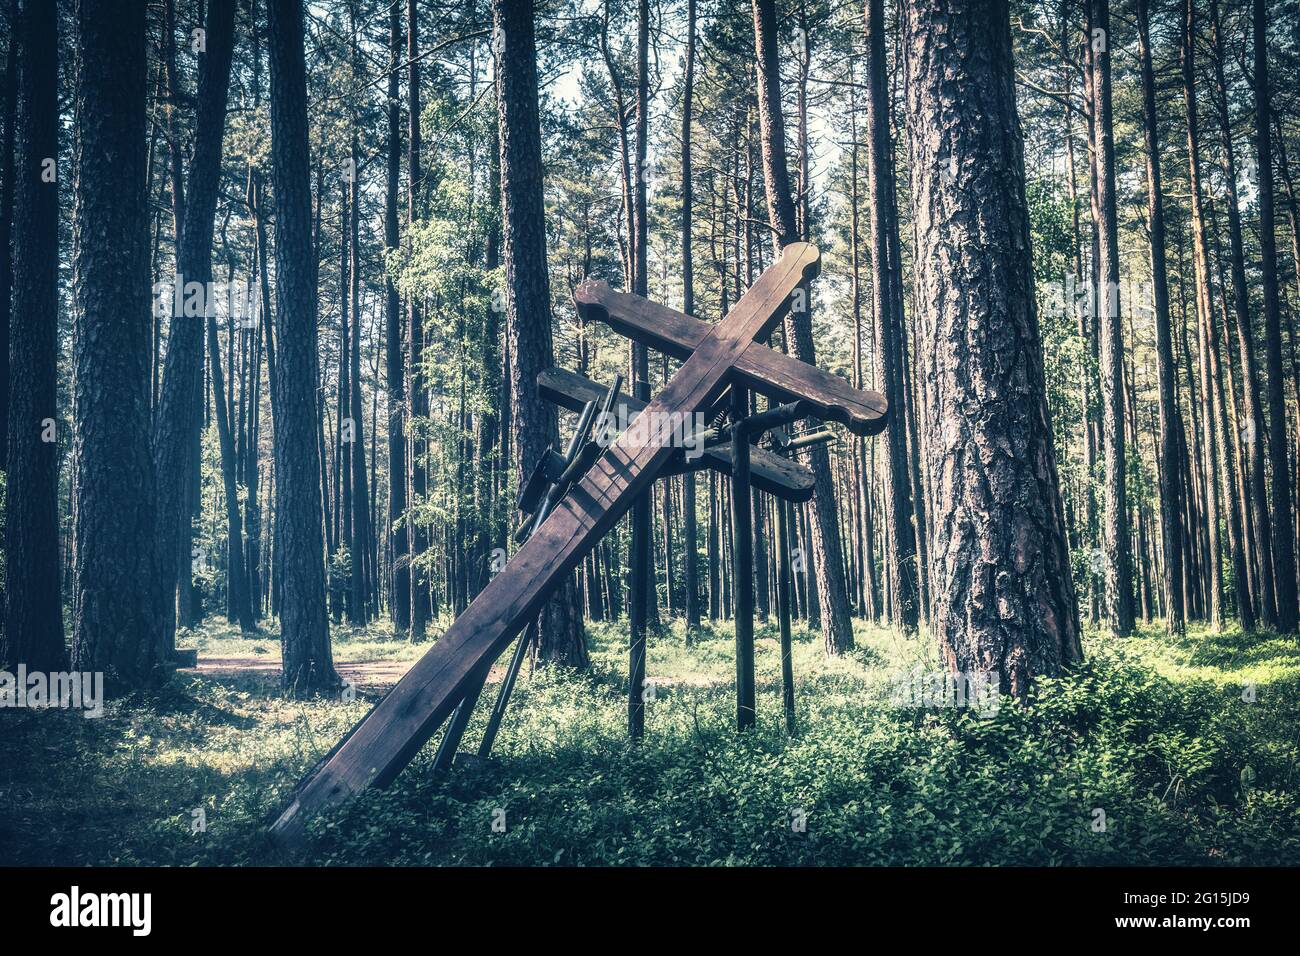 Holzkreuz als Denkmal und Monument im polnischen Wald. Gedenkstätte und Mahnmal für die Opfer der Nazis im zweiten Weltkrieg. Stock Photo